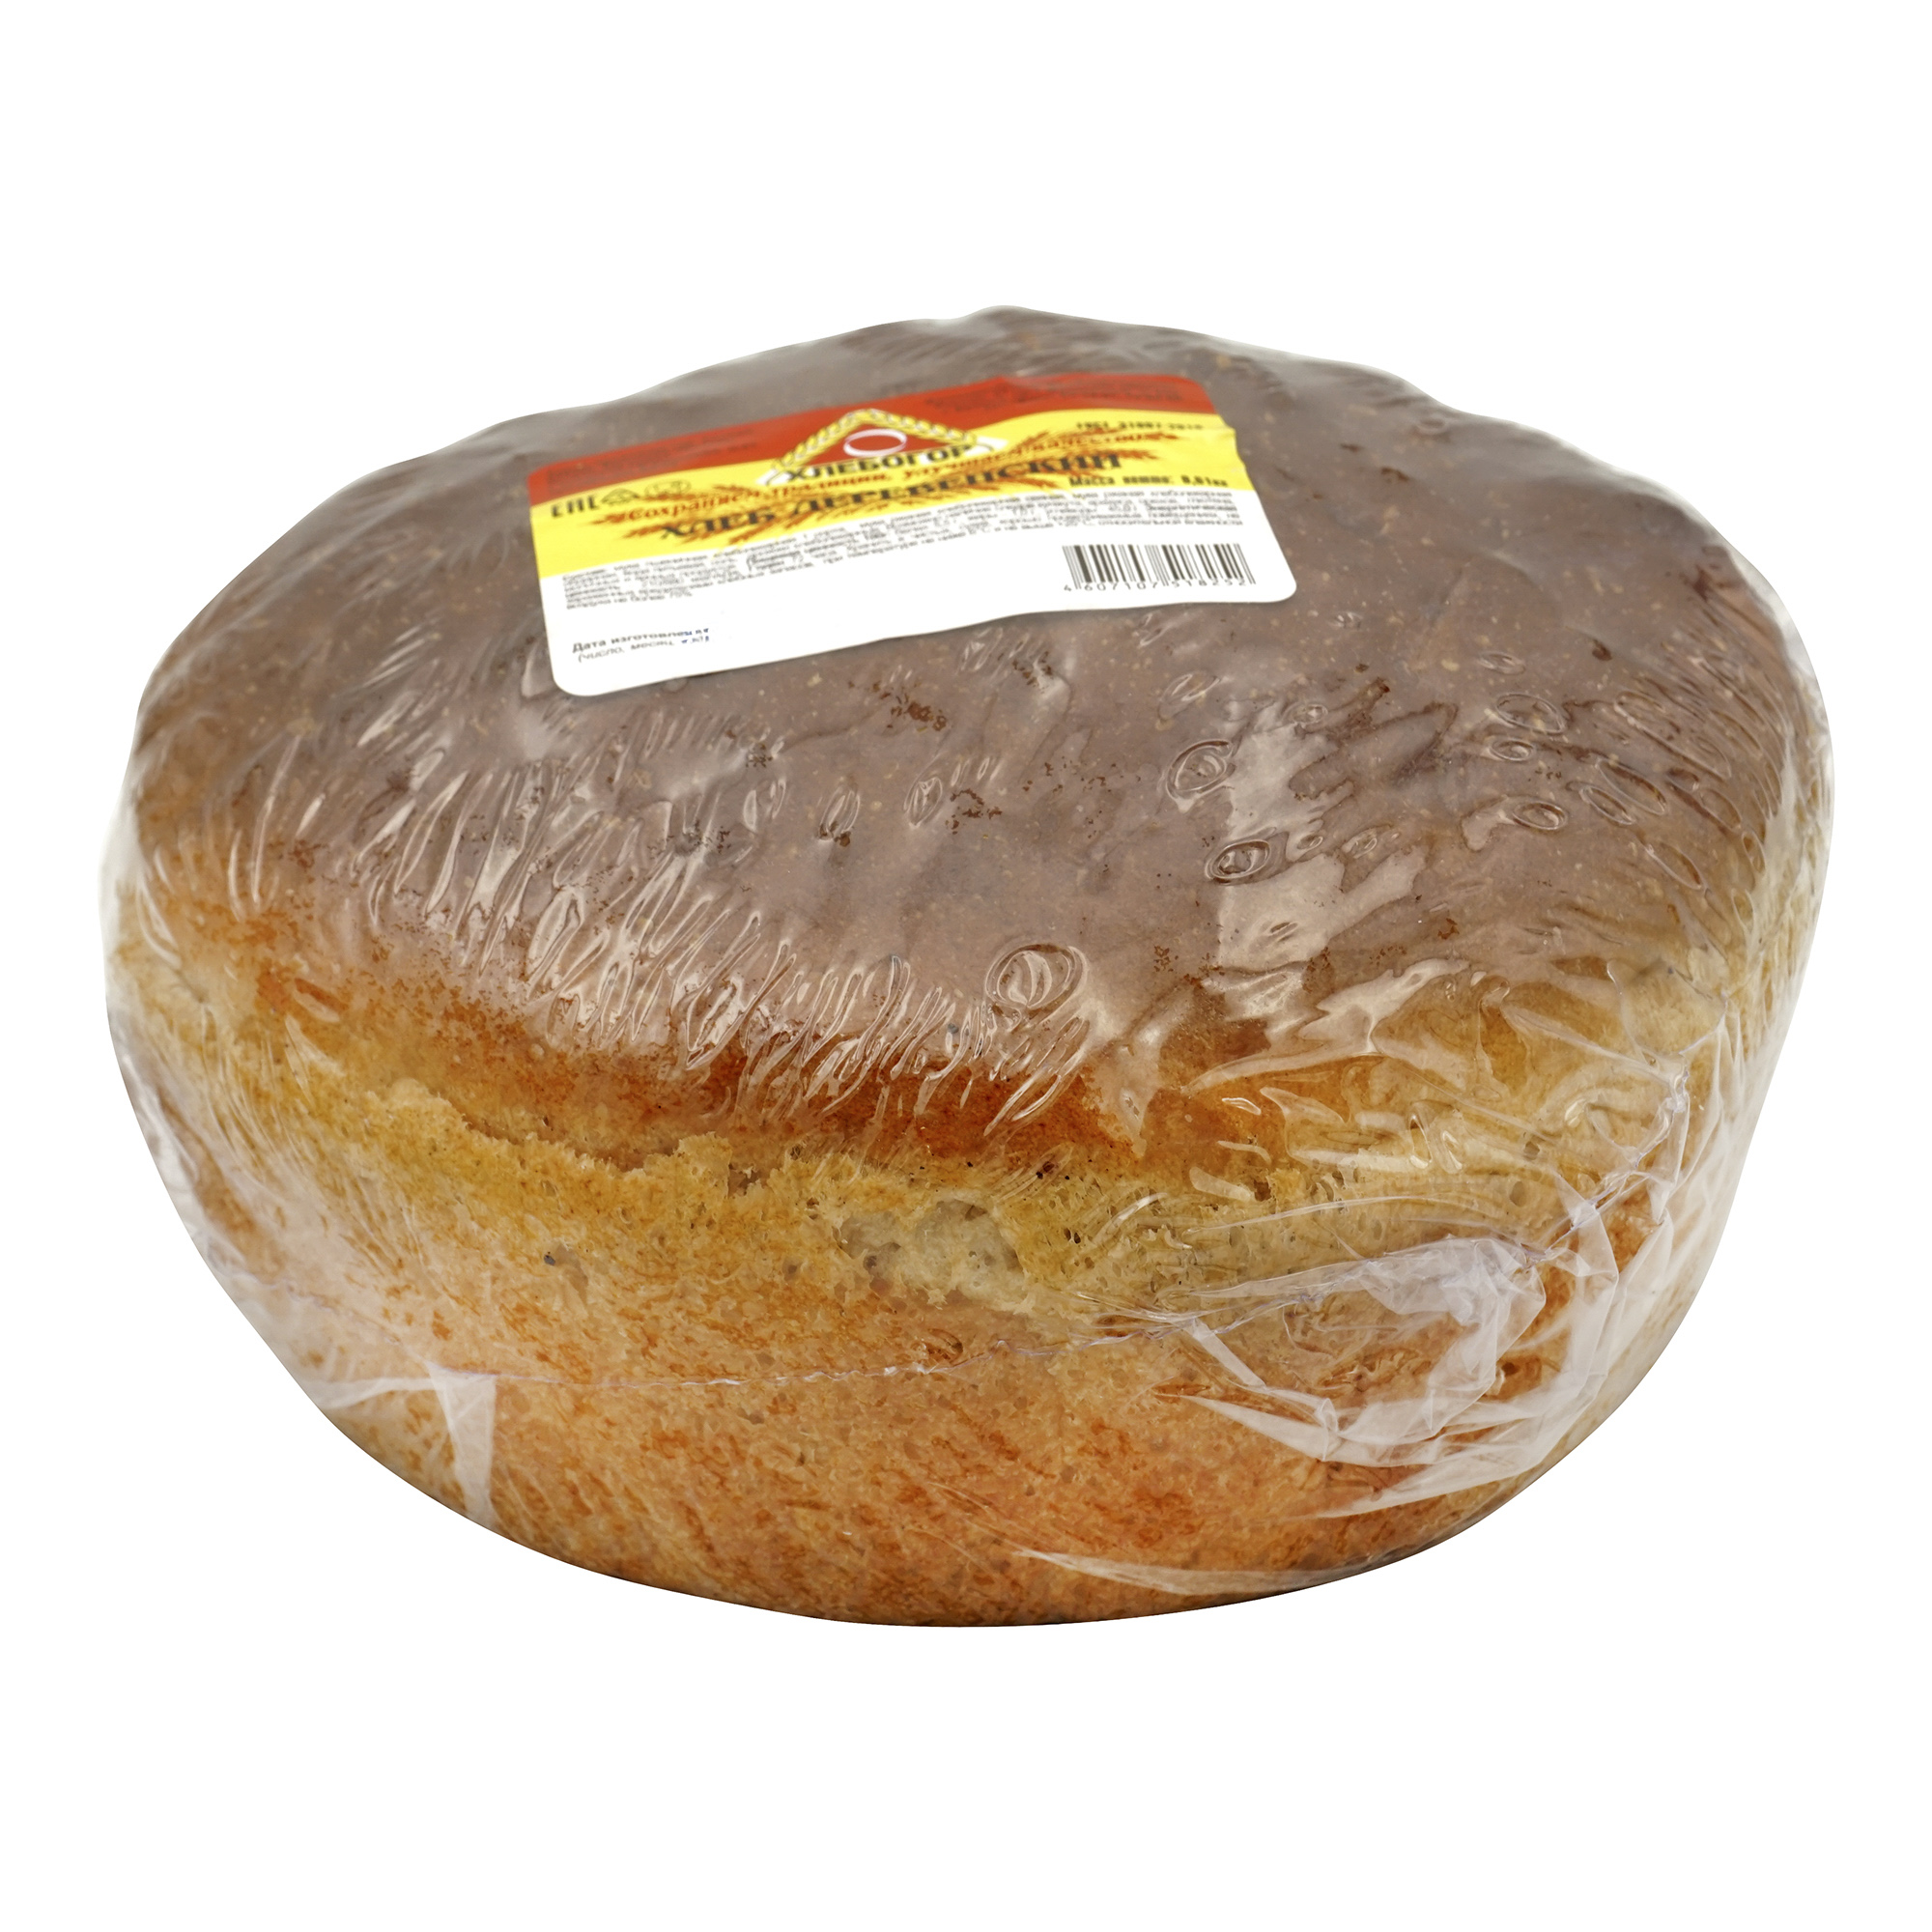 Хлеб серый, Жуковский хлеб, Деревенский ржаной, 610 г